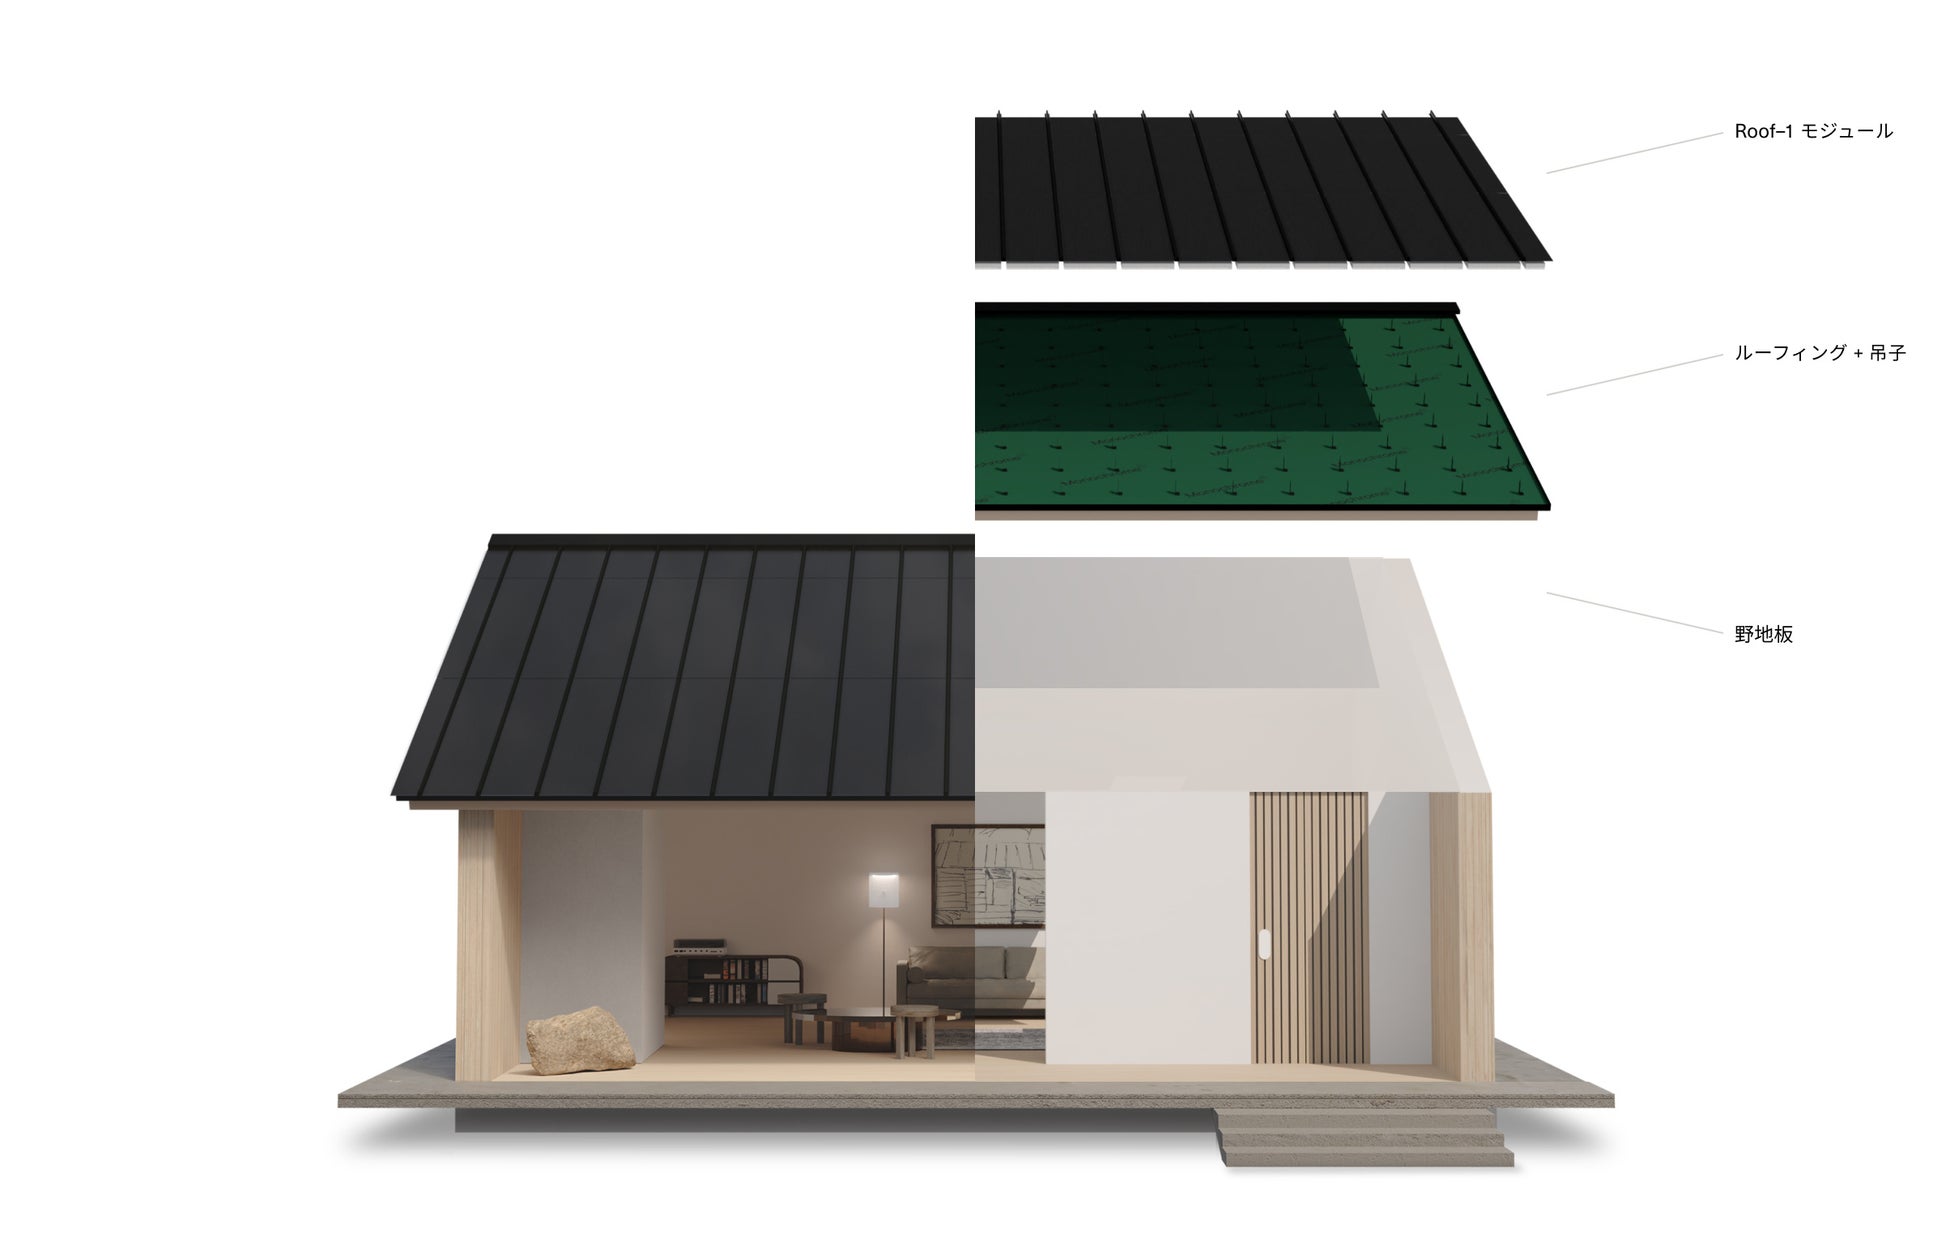 【初出展】クリーンなエネルギーをつくる屋根”Roof-1”を開発するモノクロームが、第16回PV EXPO春太陽光発電展に出展のサブ画像3_Roof-1 太陽光発電モジュールと金属屋根材が一体化